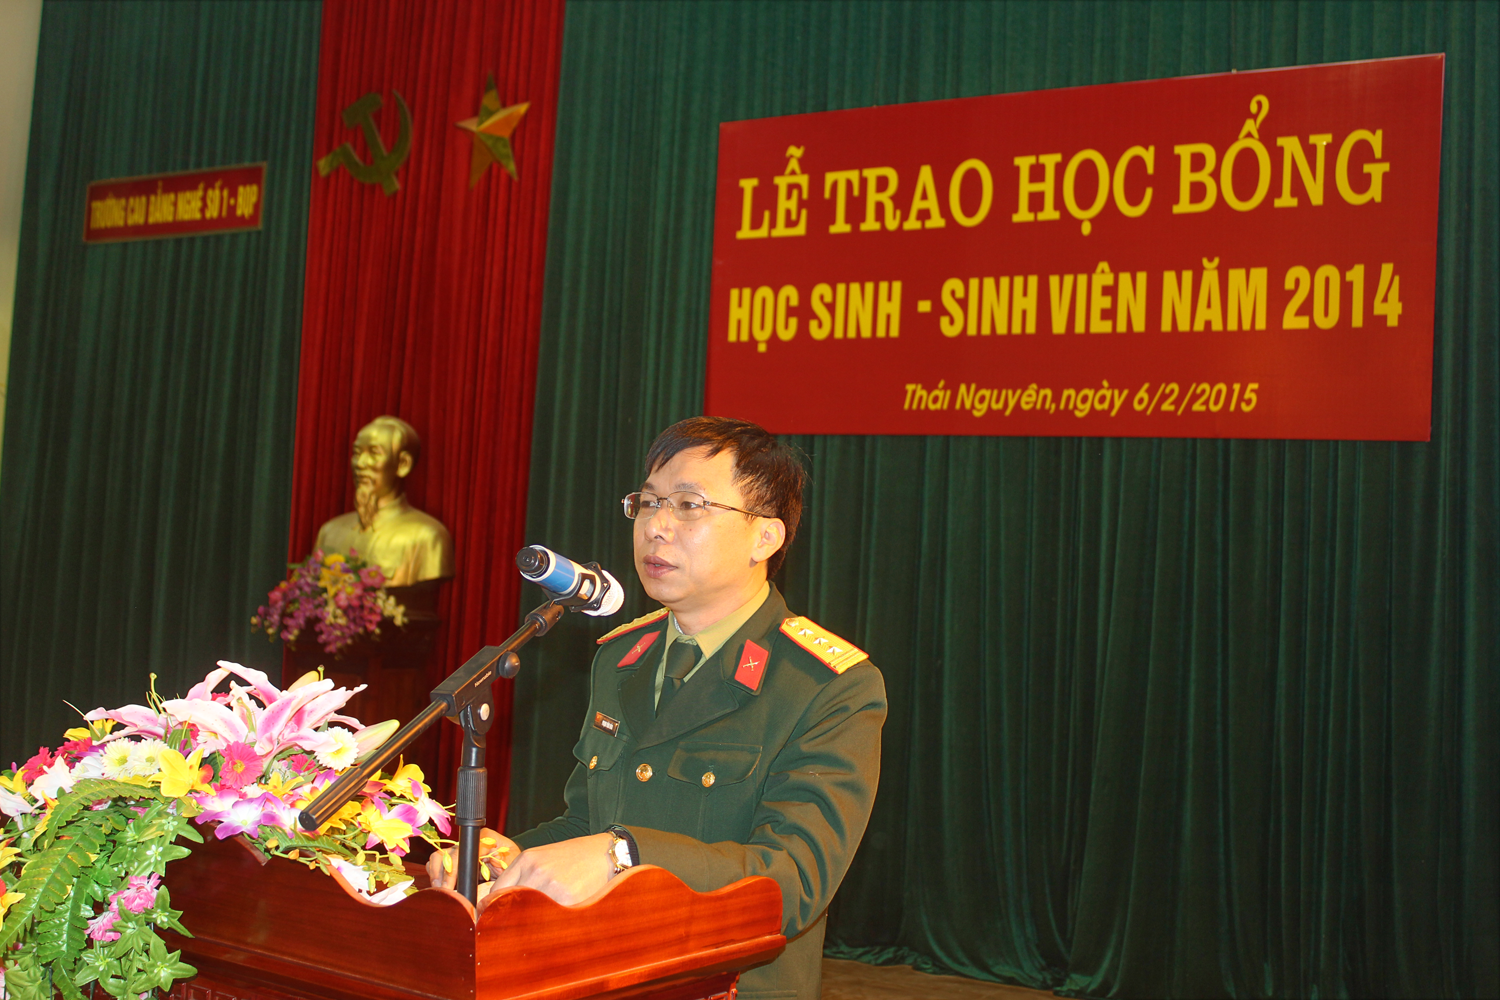 Đồng chí Thượng tá Phạm Văn Hòa – Hiệu trưởng nhà trường phát biểu tại buổi lễ trao học bổng